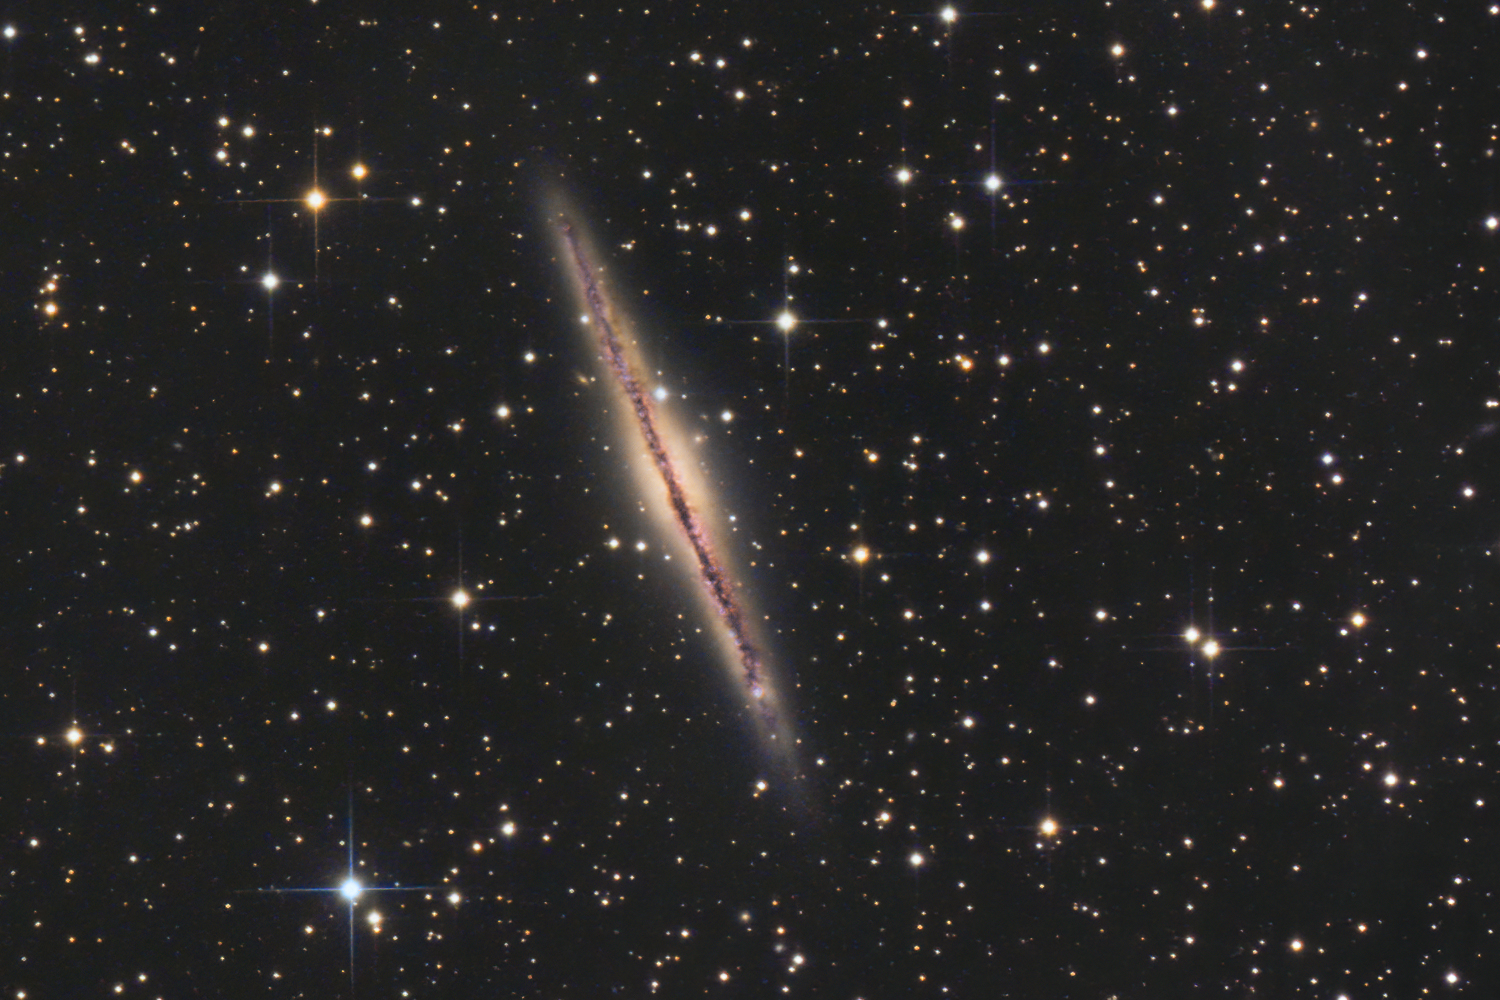 Die Kantengalaxie NGC891 im Sternbild Andromeda